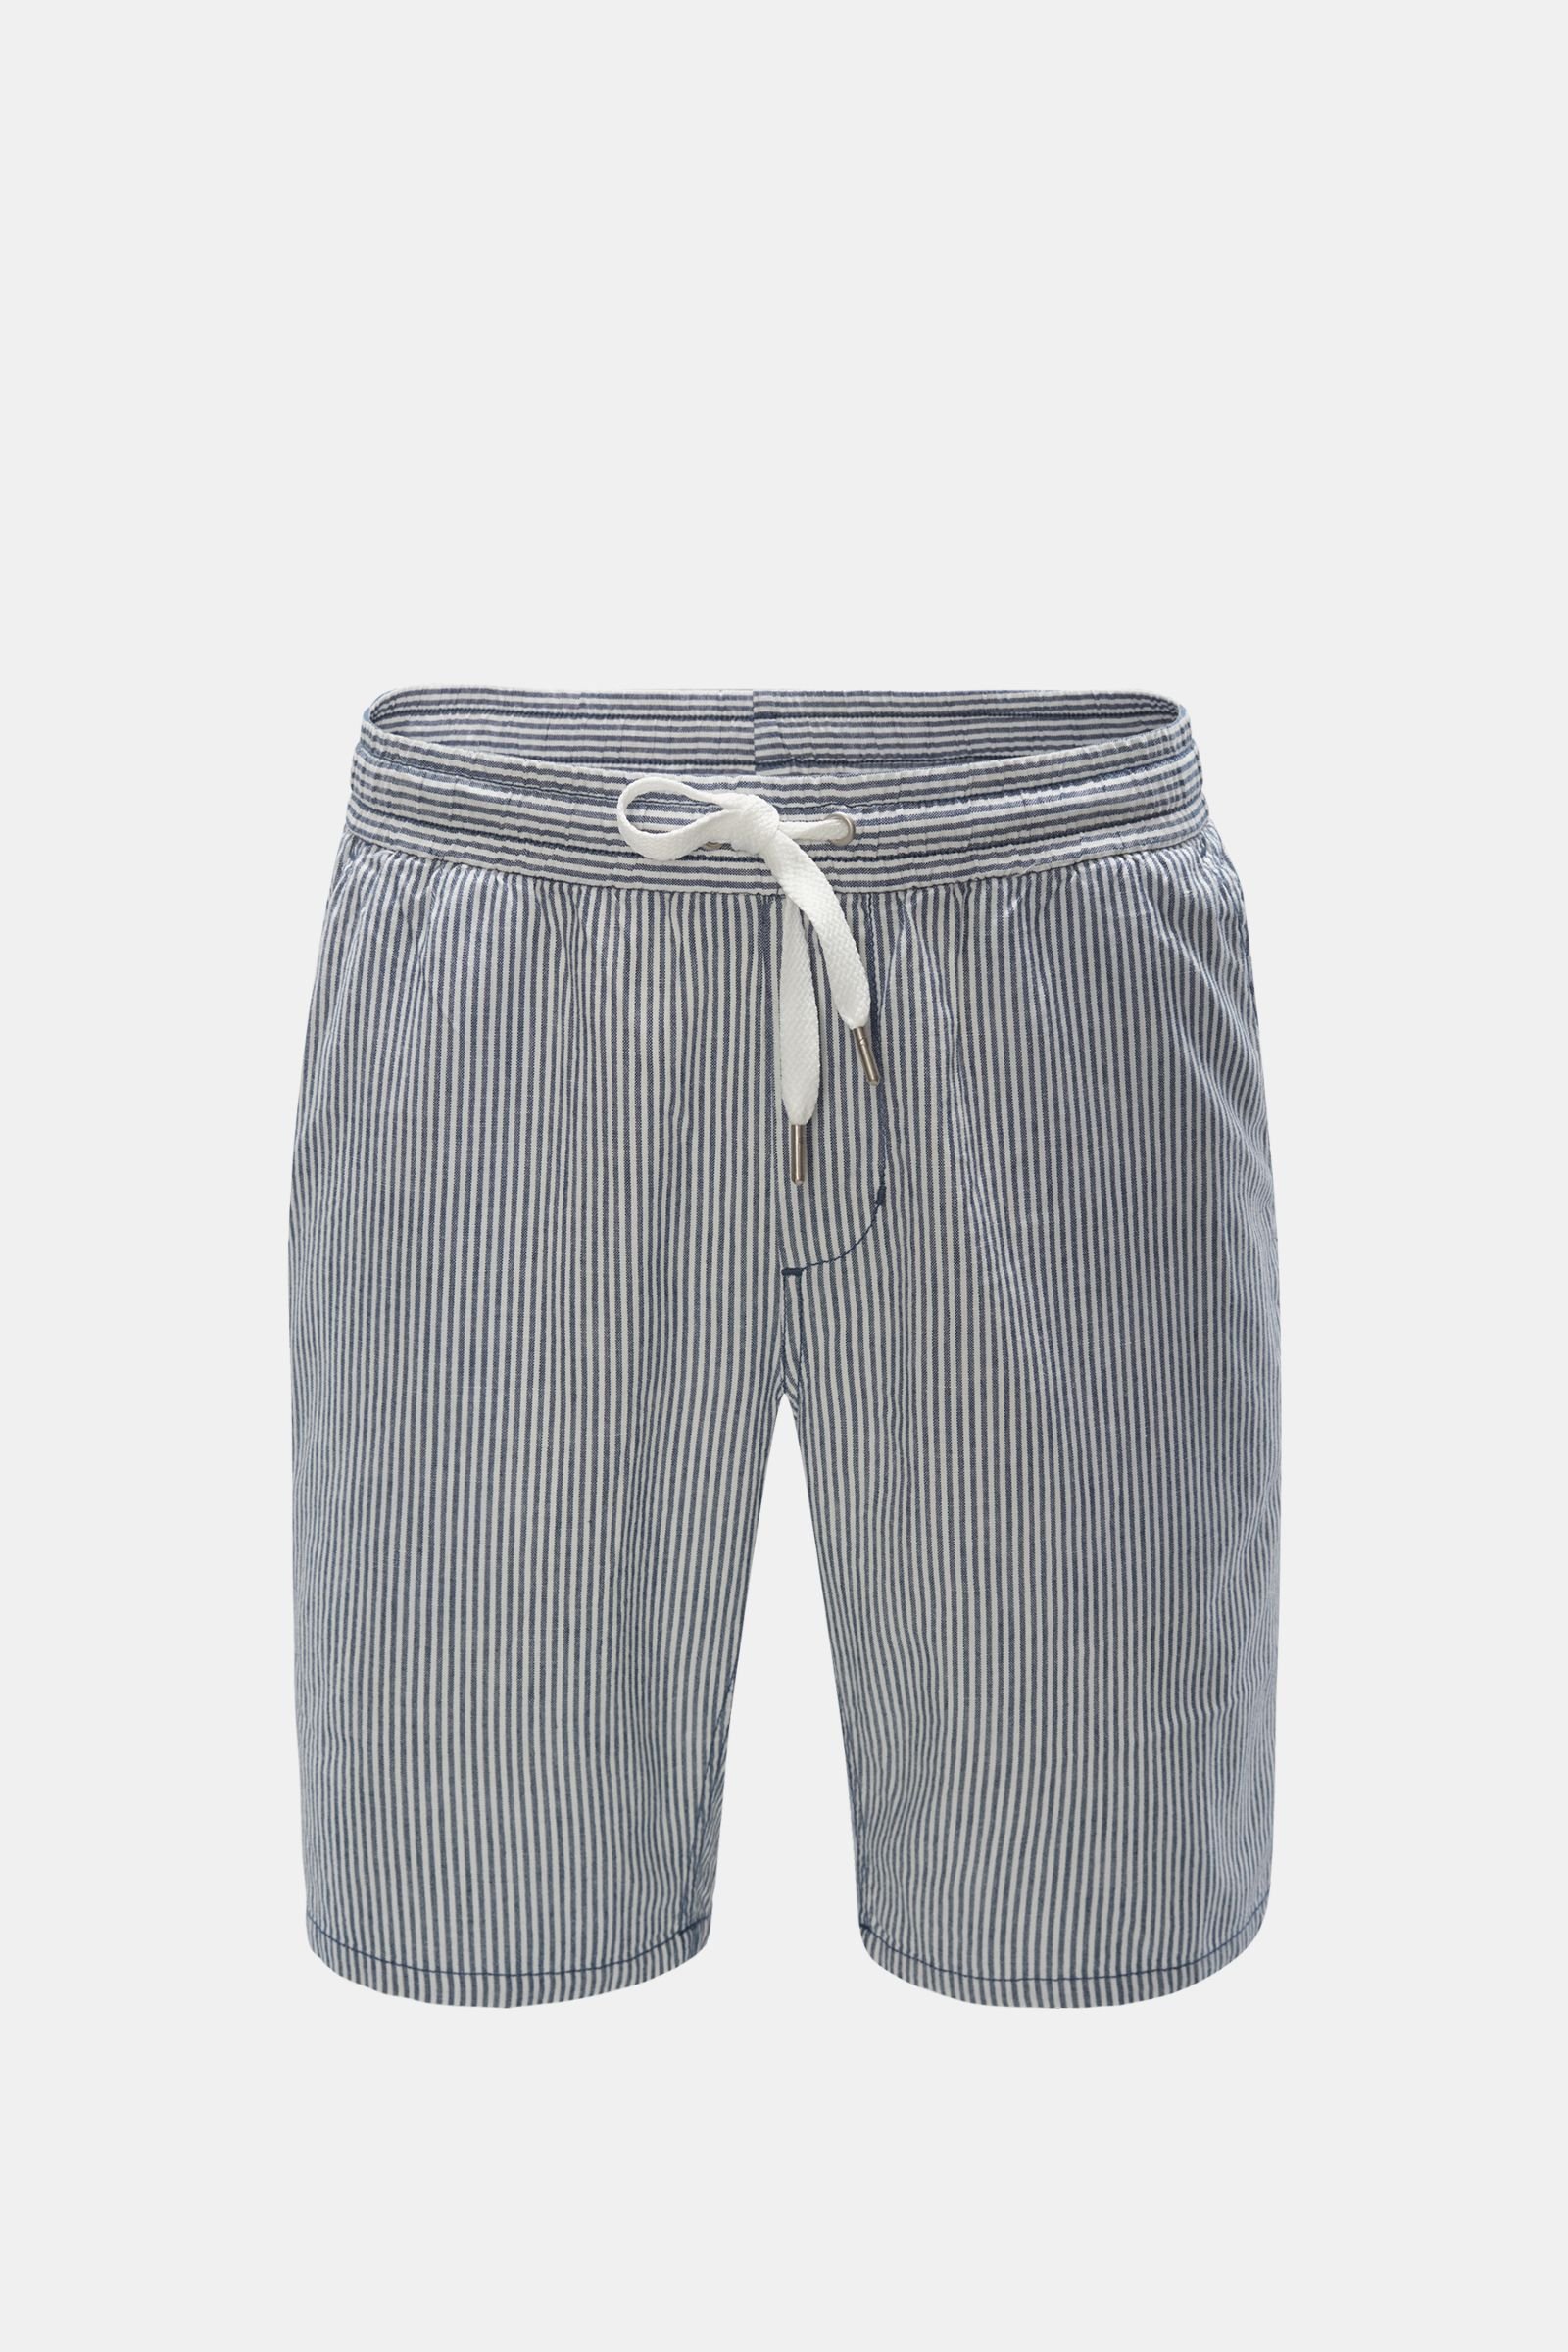 Bermuda shorts navy/white striped